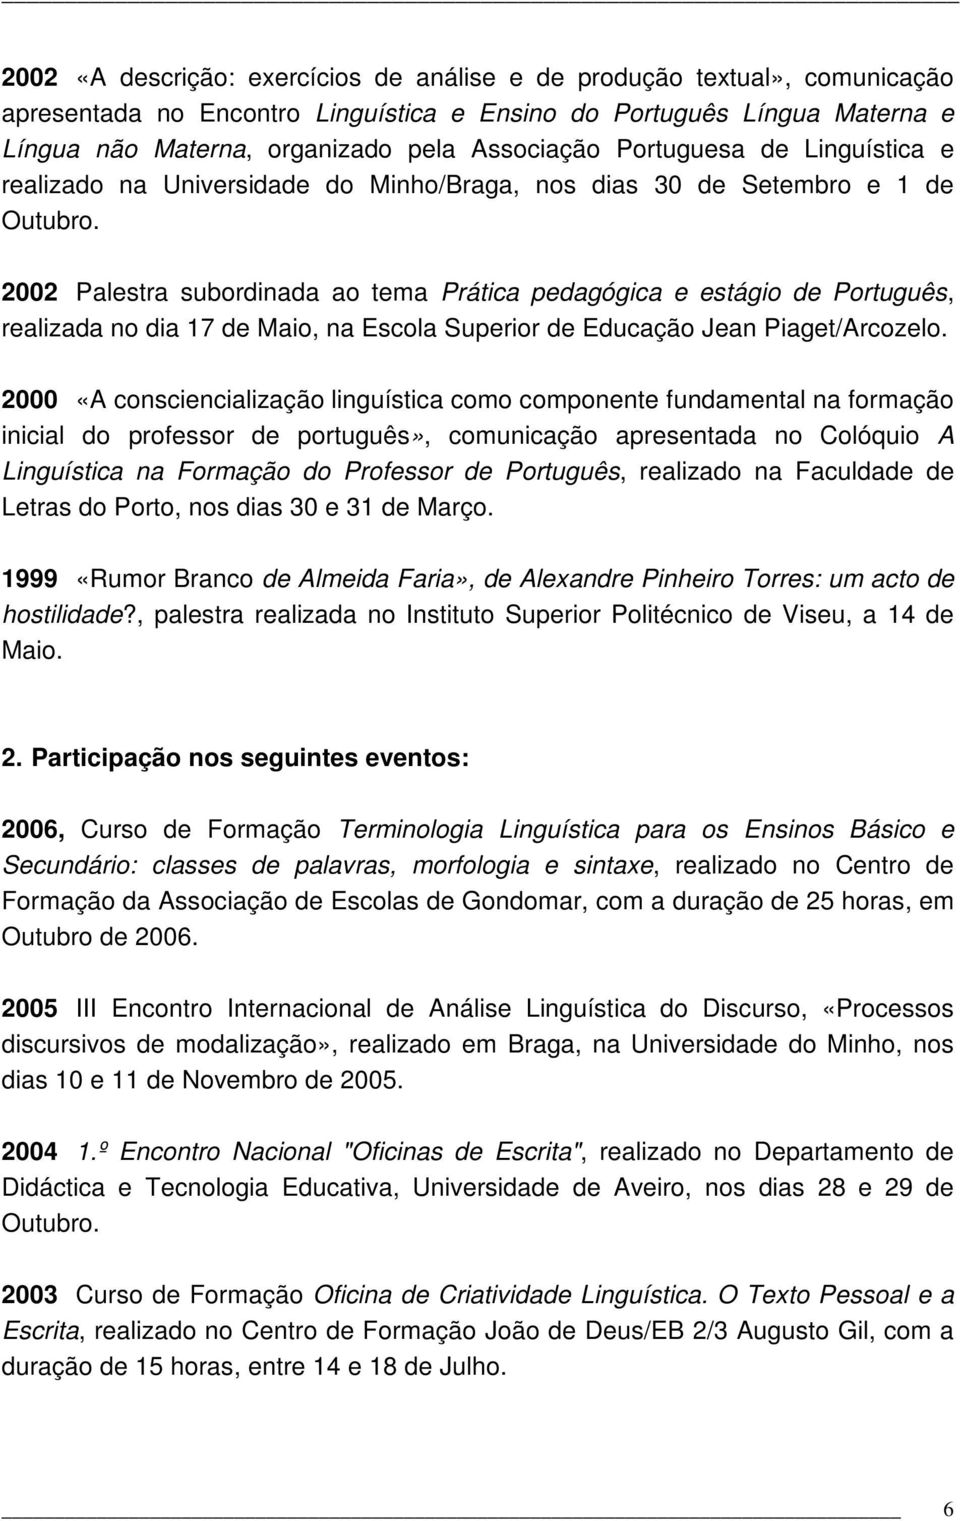 2002 Palestra subordinada ao tema Prática pedagógica e estágio de Português, realizada no dia 17 de Maio, na Escola Superior de Educação Jean Piaget/Arcozelo.